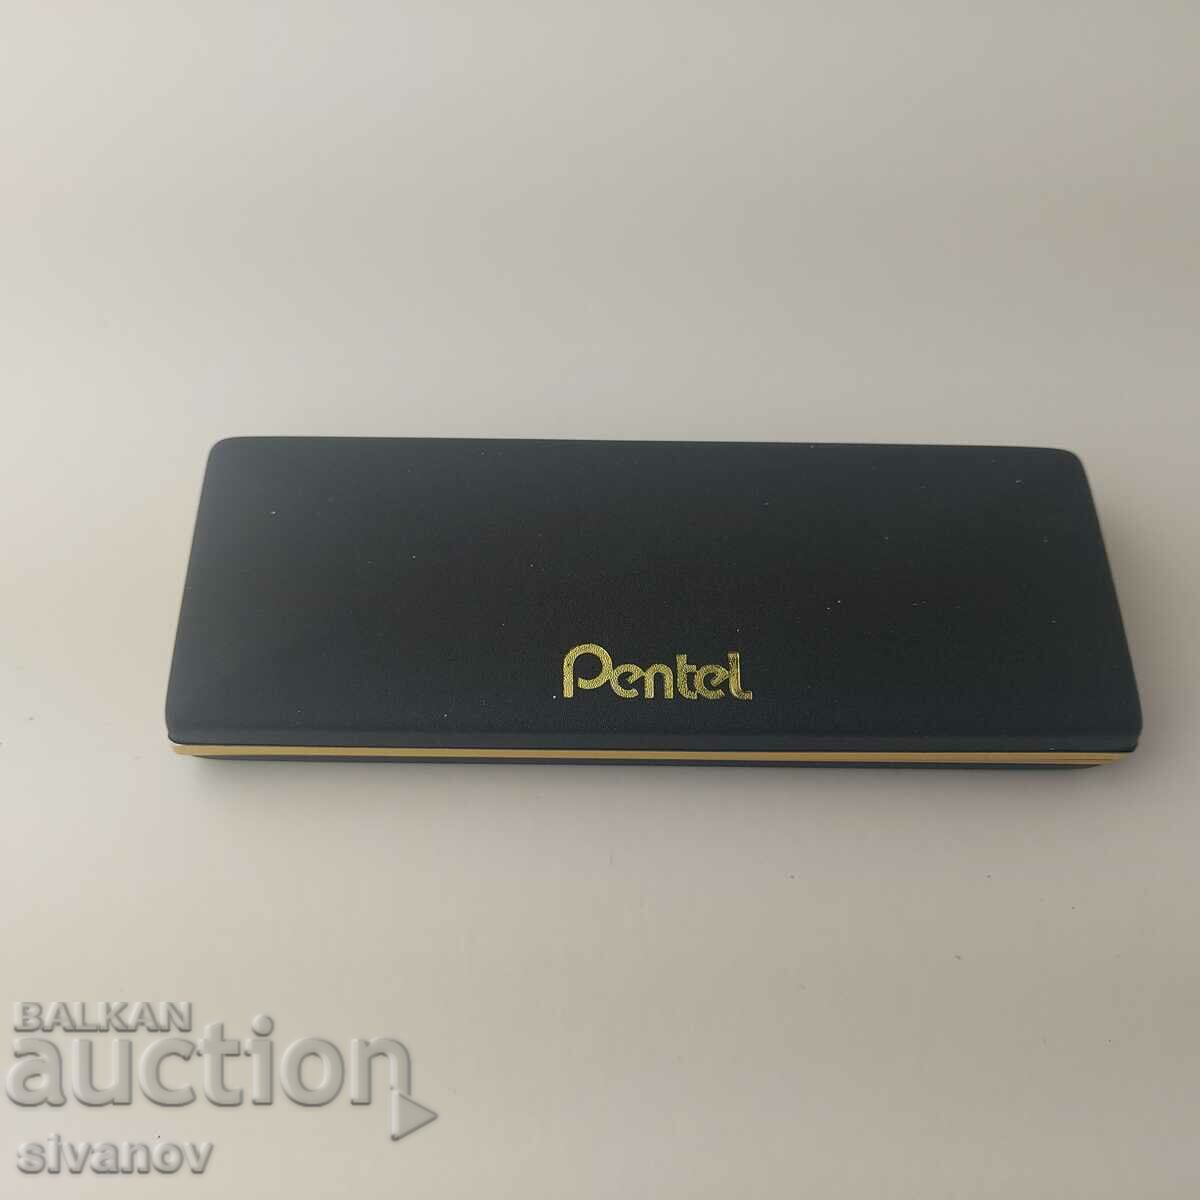 Old Pentel Pen or Pencil Case #5508